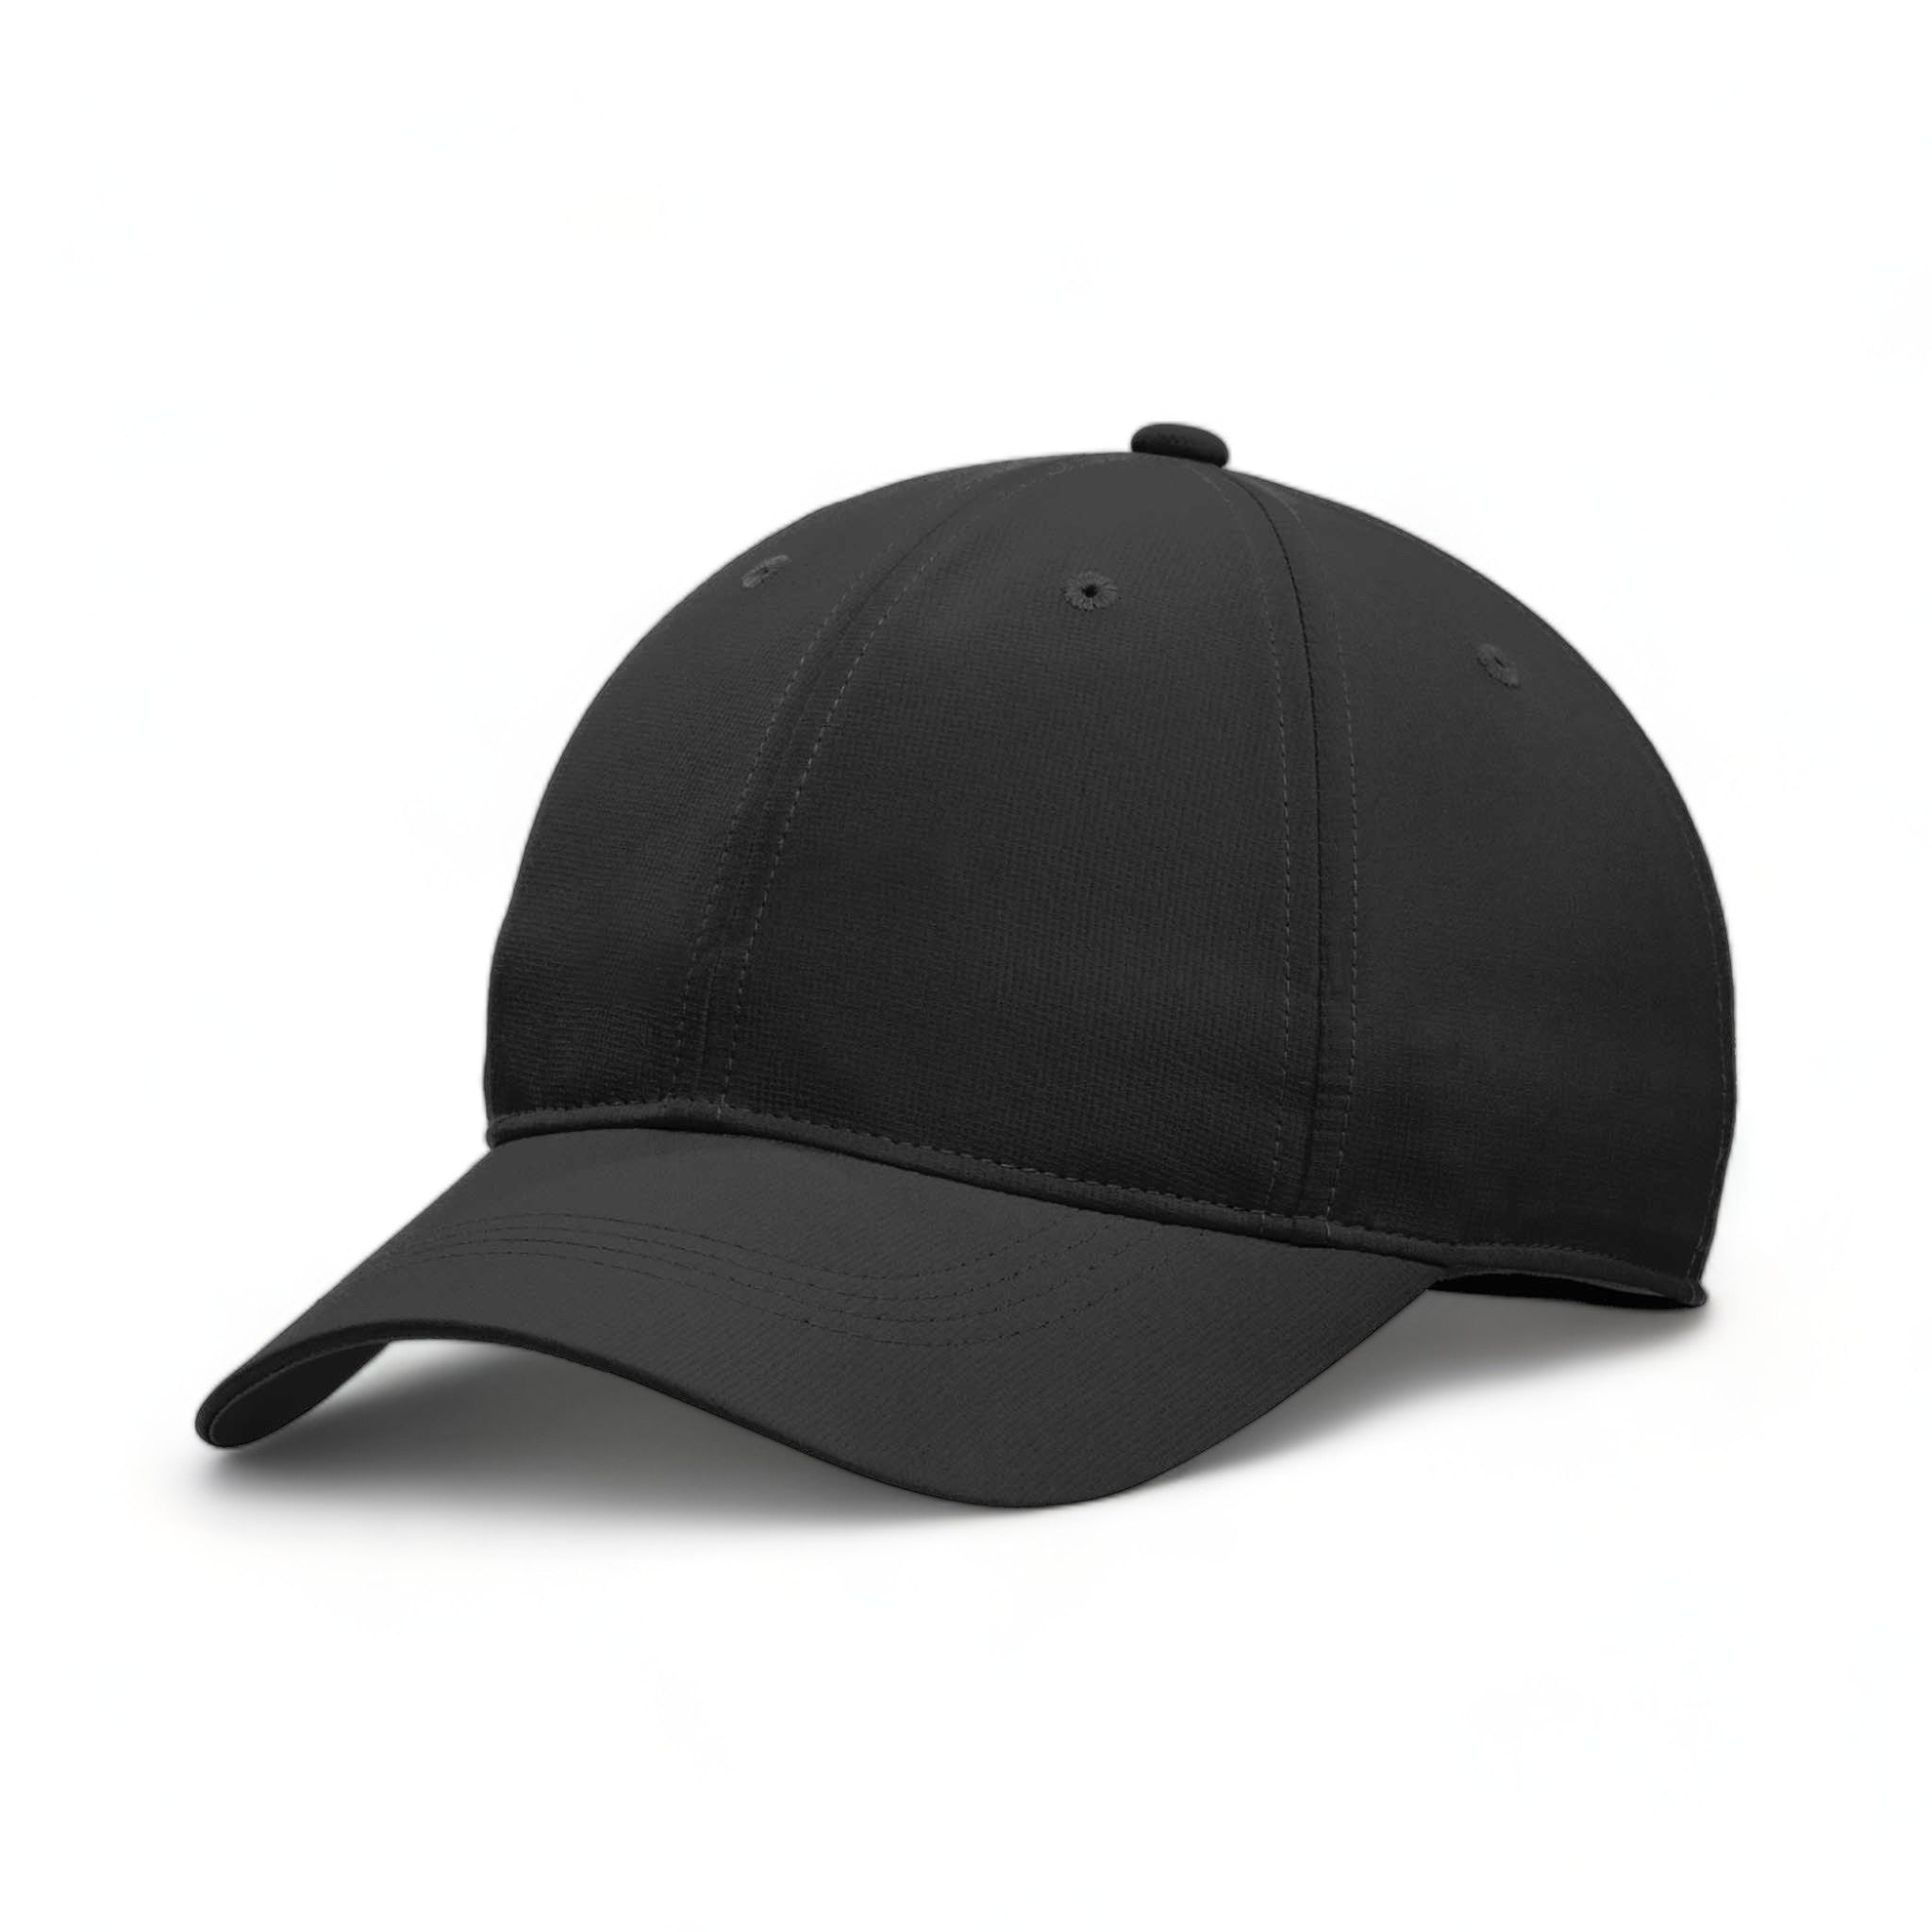 Side view of Nike NKFB6444 custom hat in black